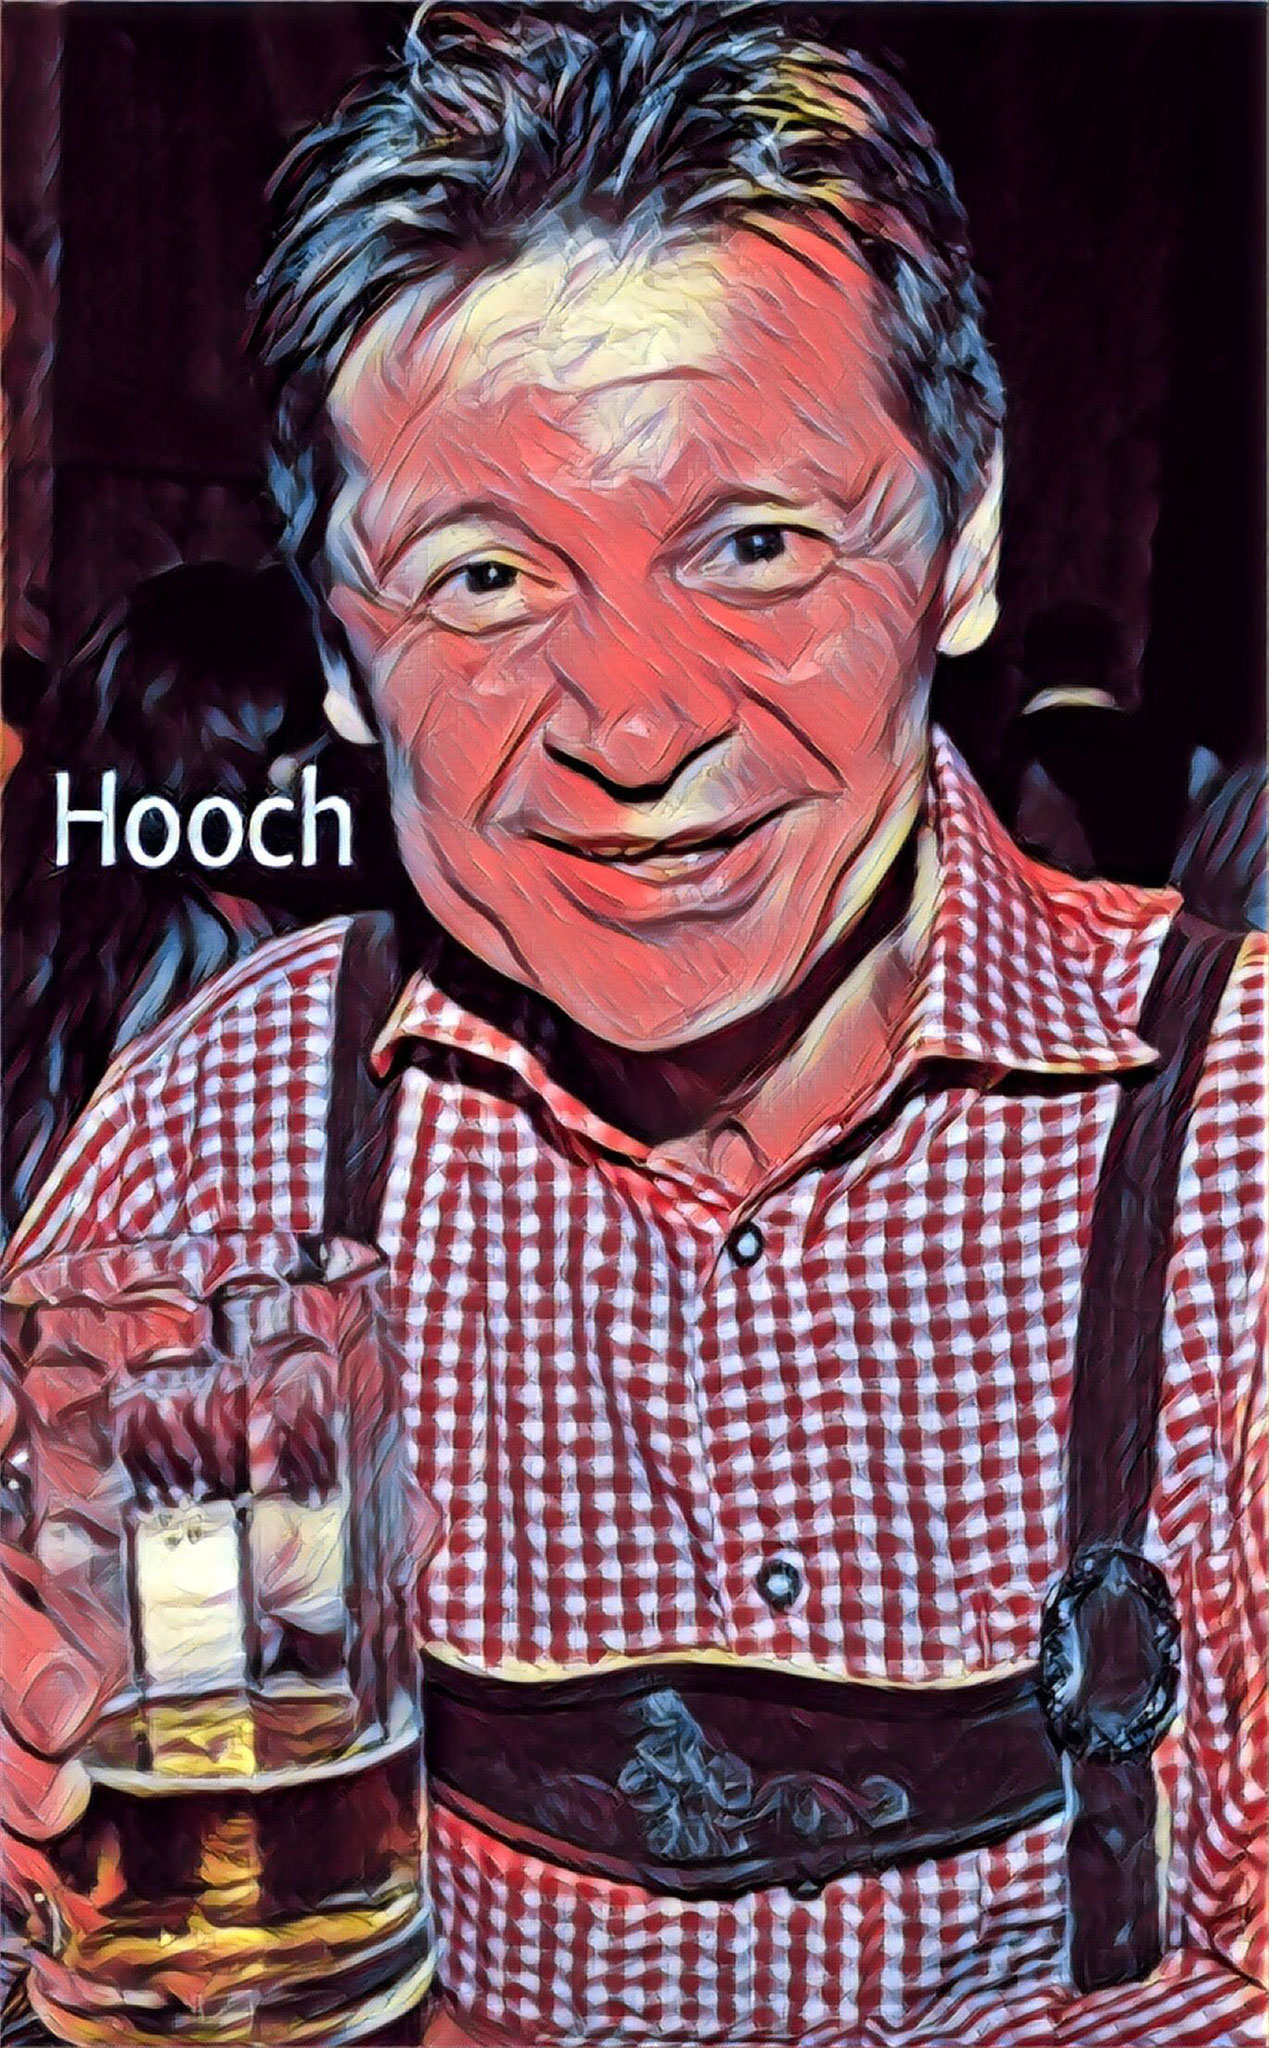 Josef "Hooch" Theiler